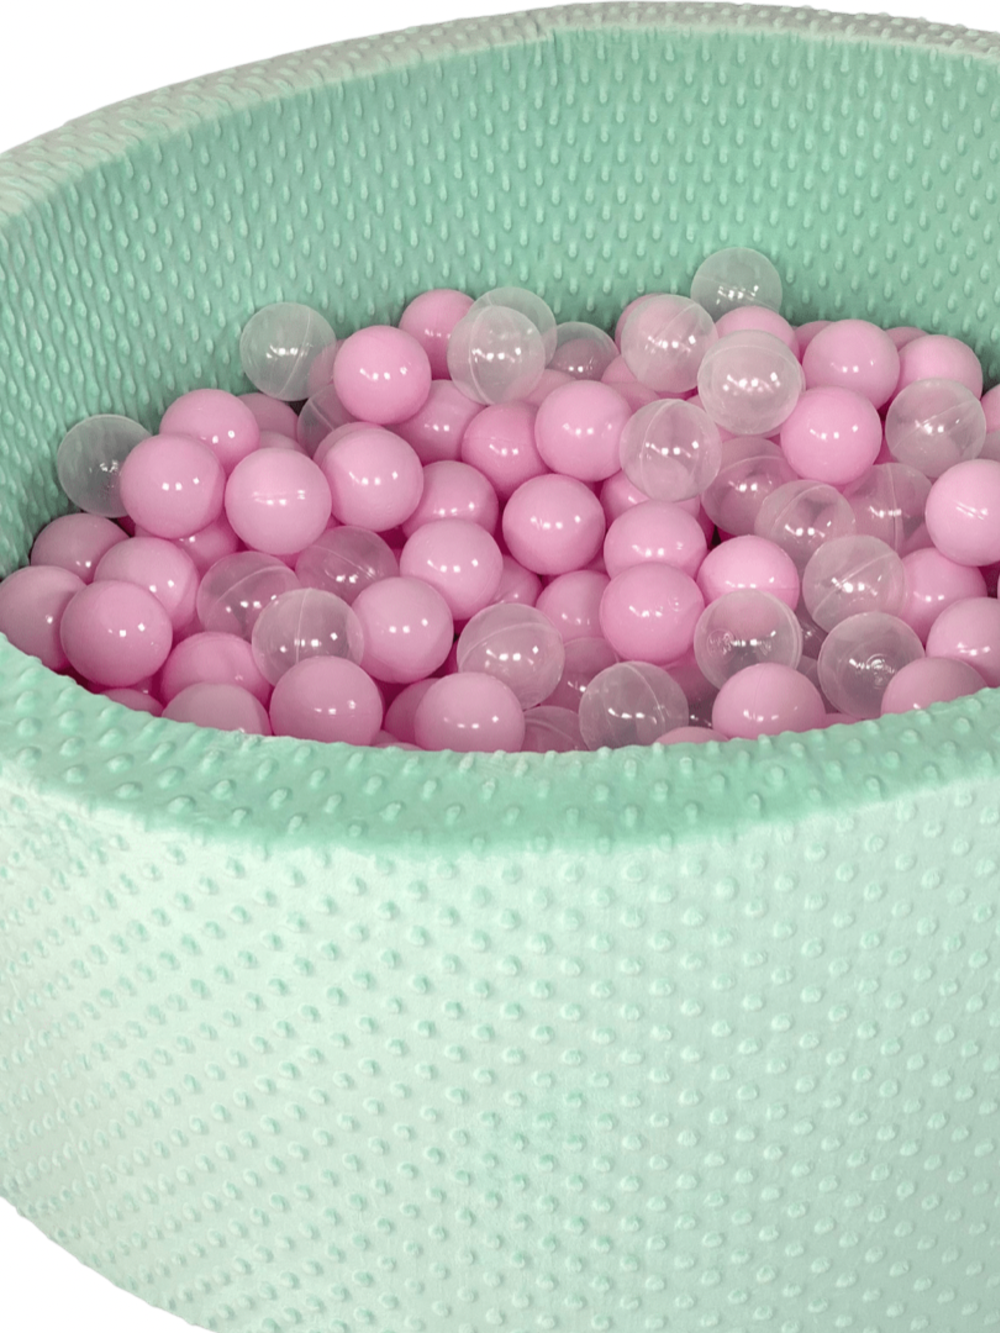 Children's Pool With Velvet Pink Balls